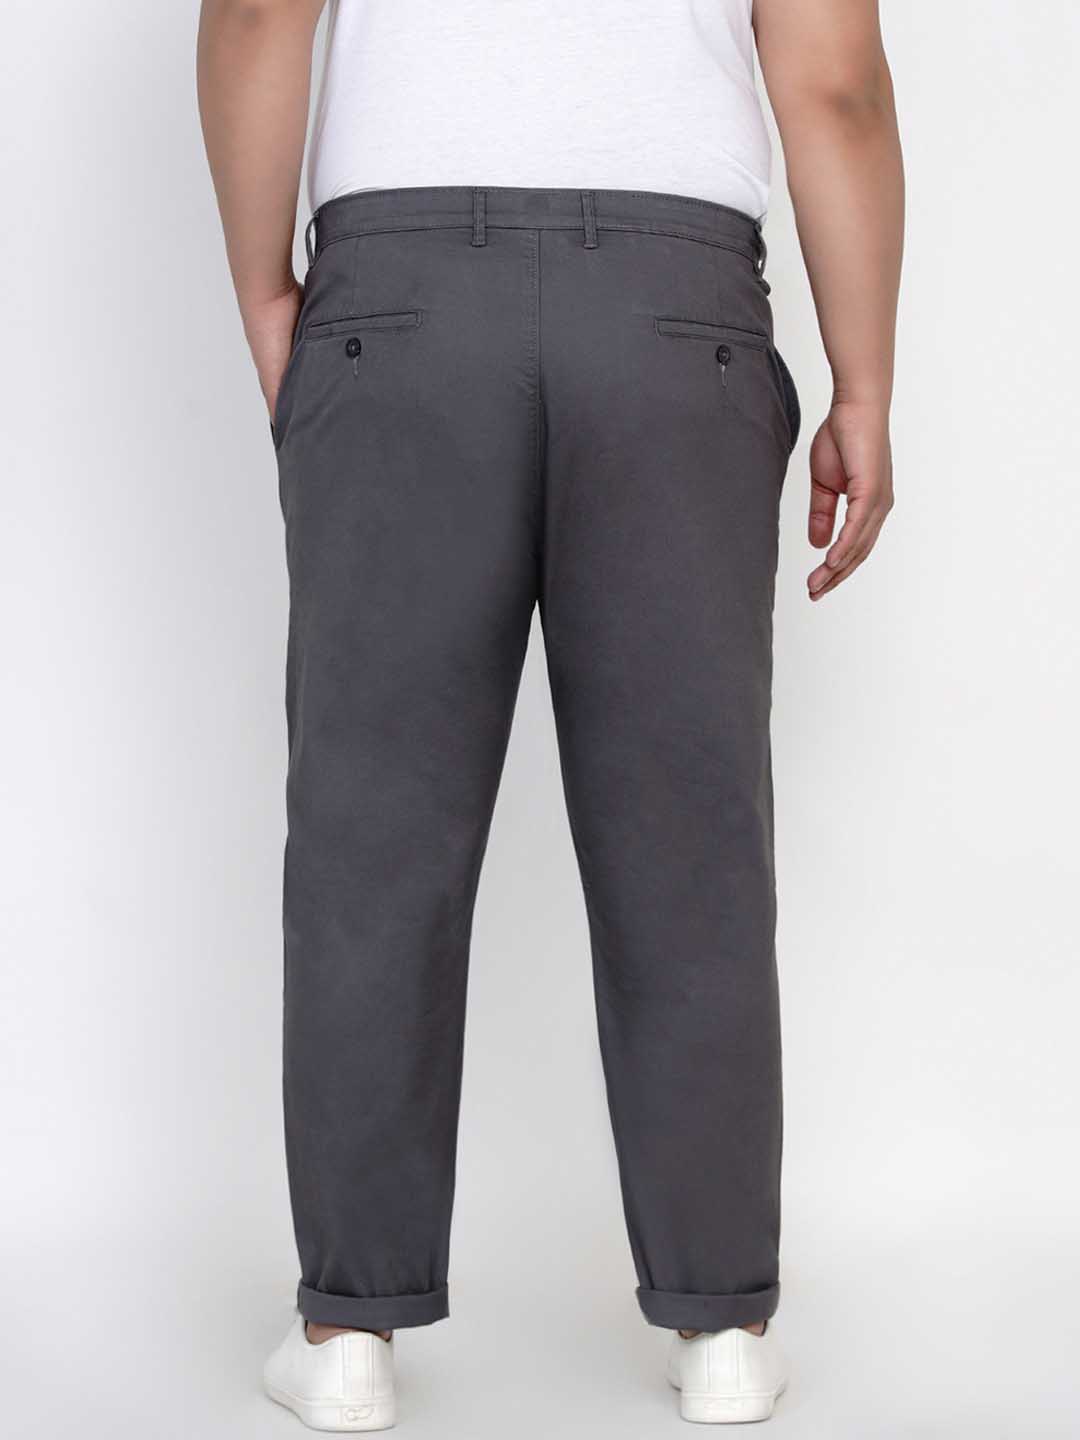 bottomwear/trousers/JPTR2195E/jptr2195e-4.jpg